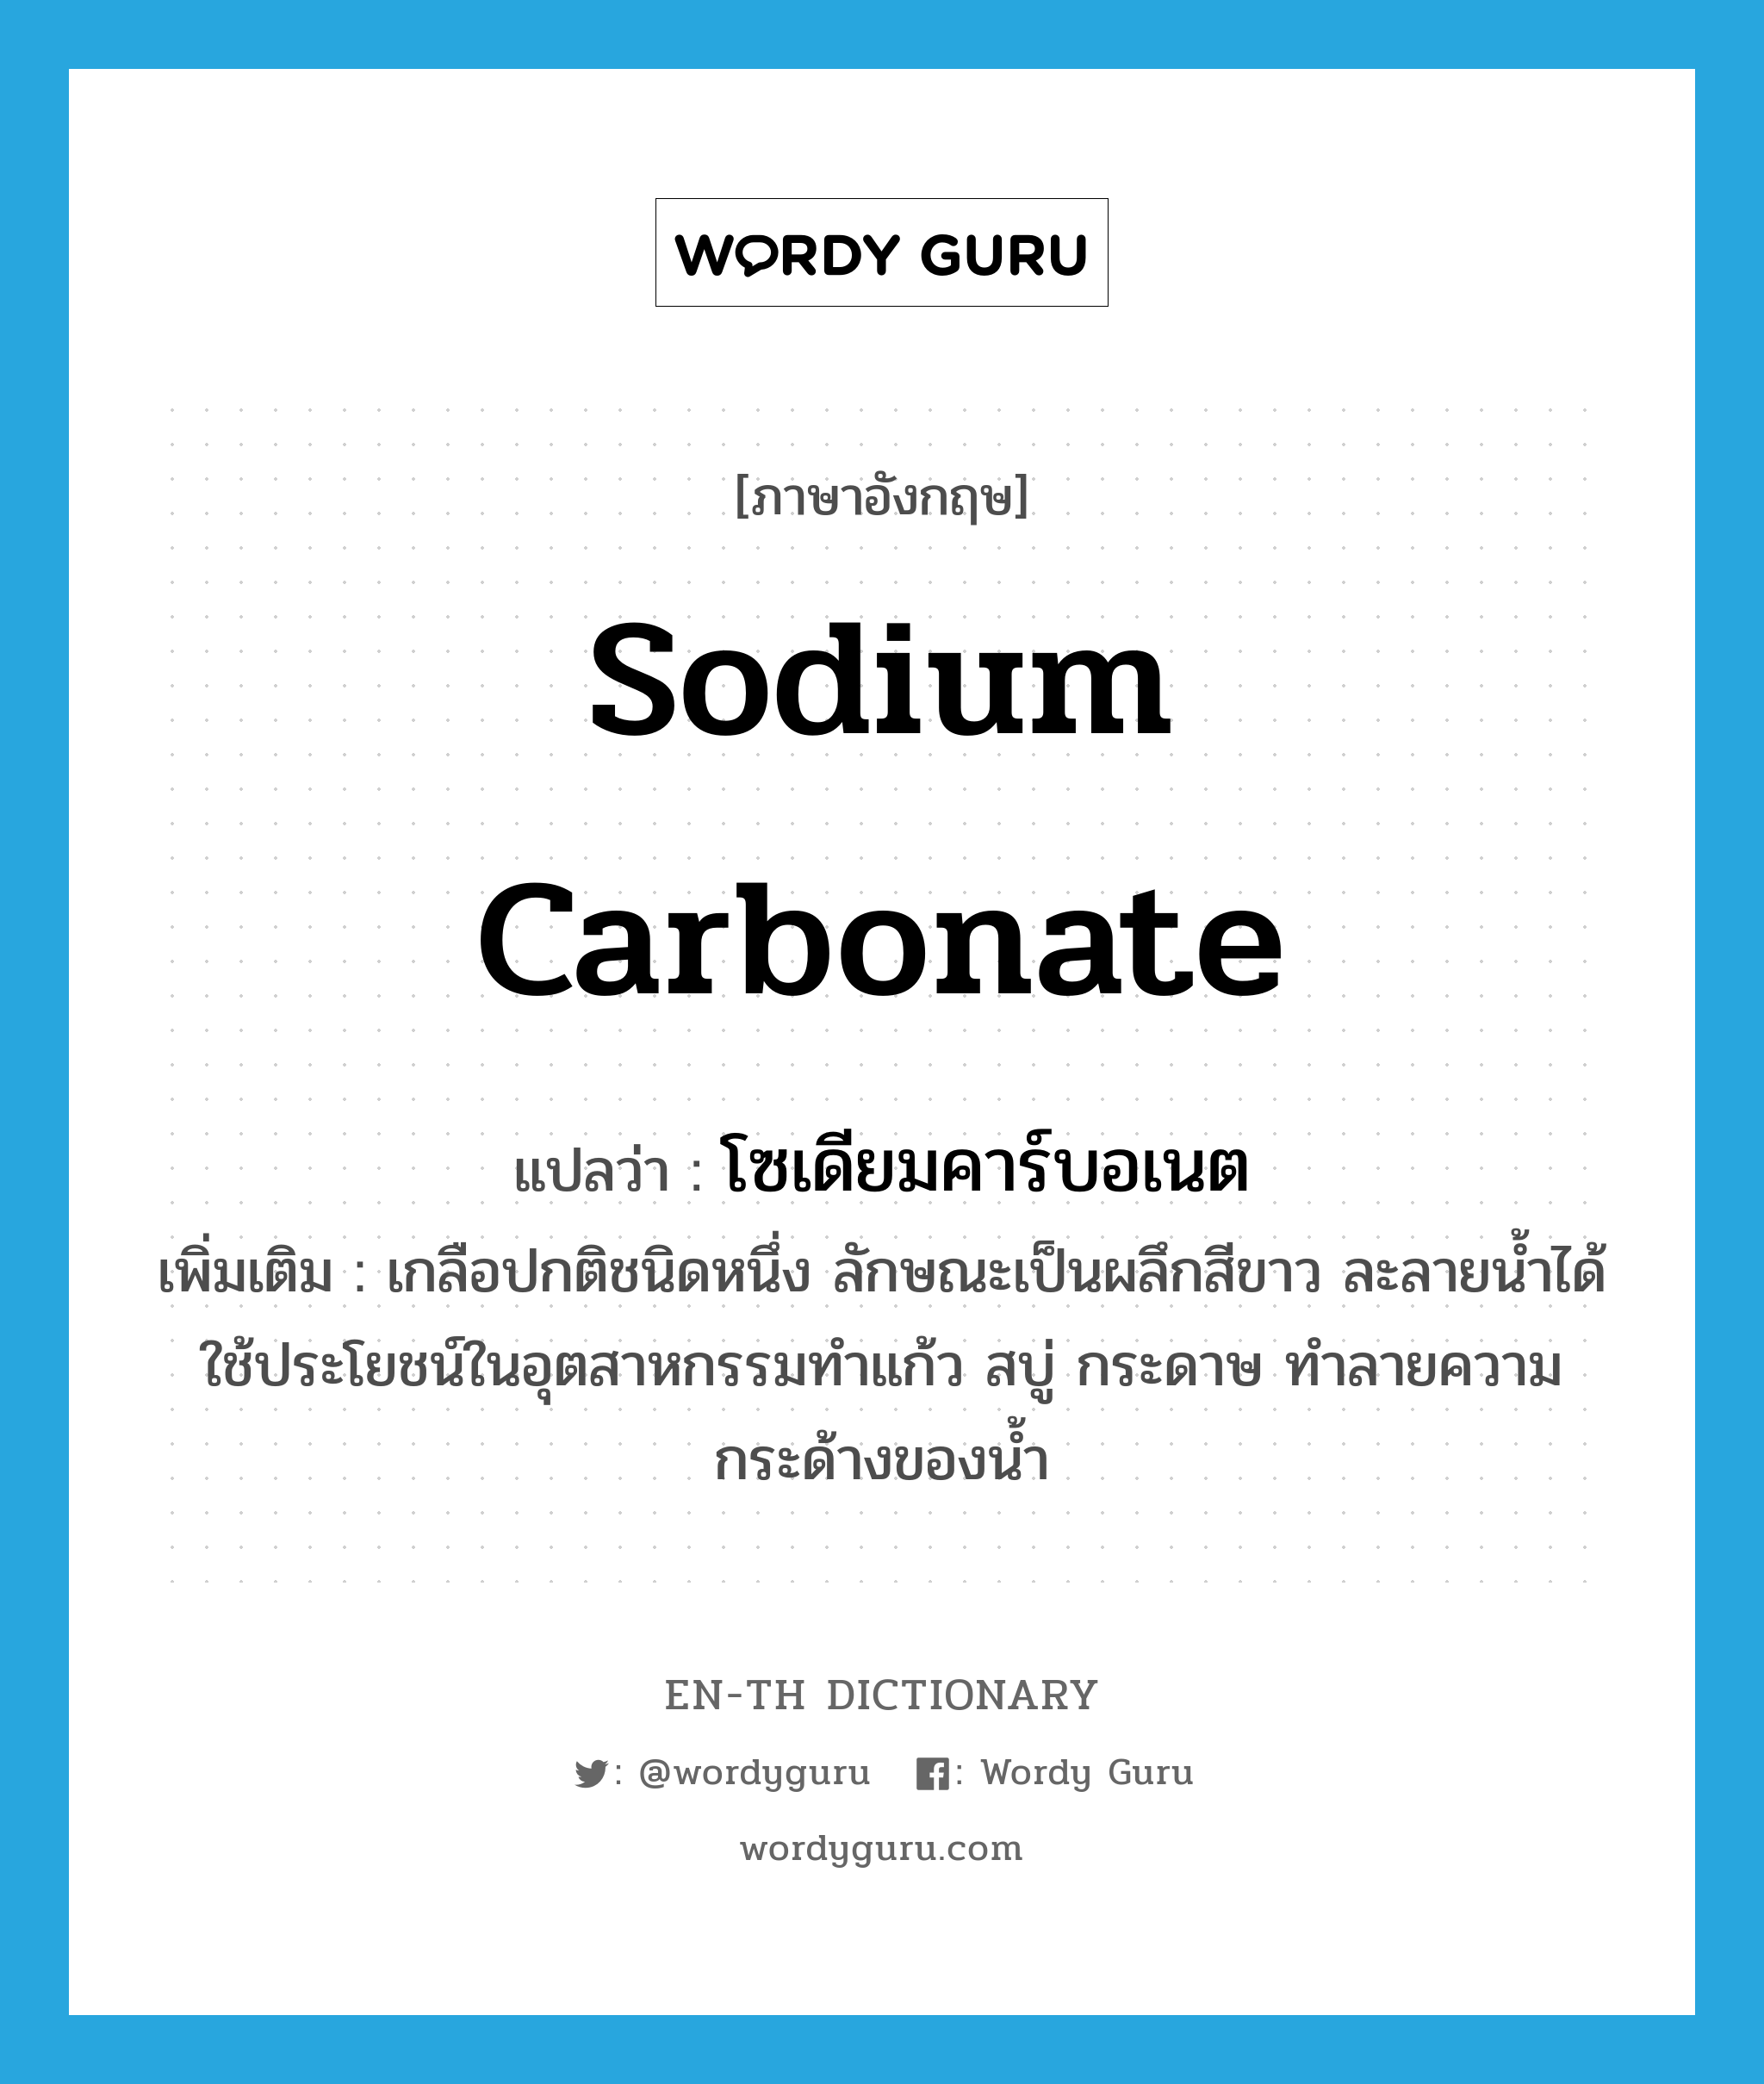 โซเดียมคาร์บอเนต ภาษาอังกฤษ?, คำศัพท์ภาษาอังกฤษ โซเดียมคาร์บอเนต แปลว่า sodium carbonate ประเภท N เพิ่มเติม เกลือปกติชนิดหนึ่ง ลักษณะเป็นผลึกสีขาว ละลายน้ำได้ ใช้ประโยชน์ในอุตสาหกรรมทำแก้ว สบู่ กระดาษ ทำลายความกระด้างของน้ำ หมวด N